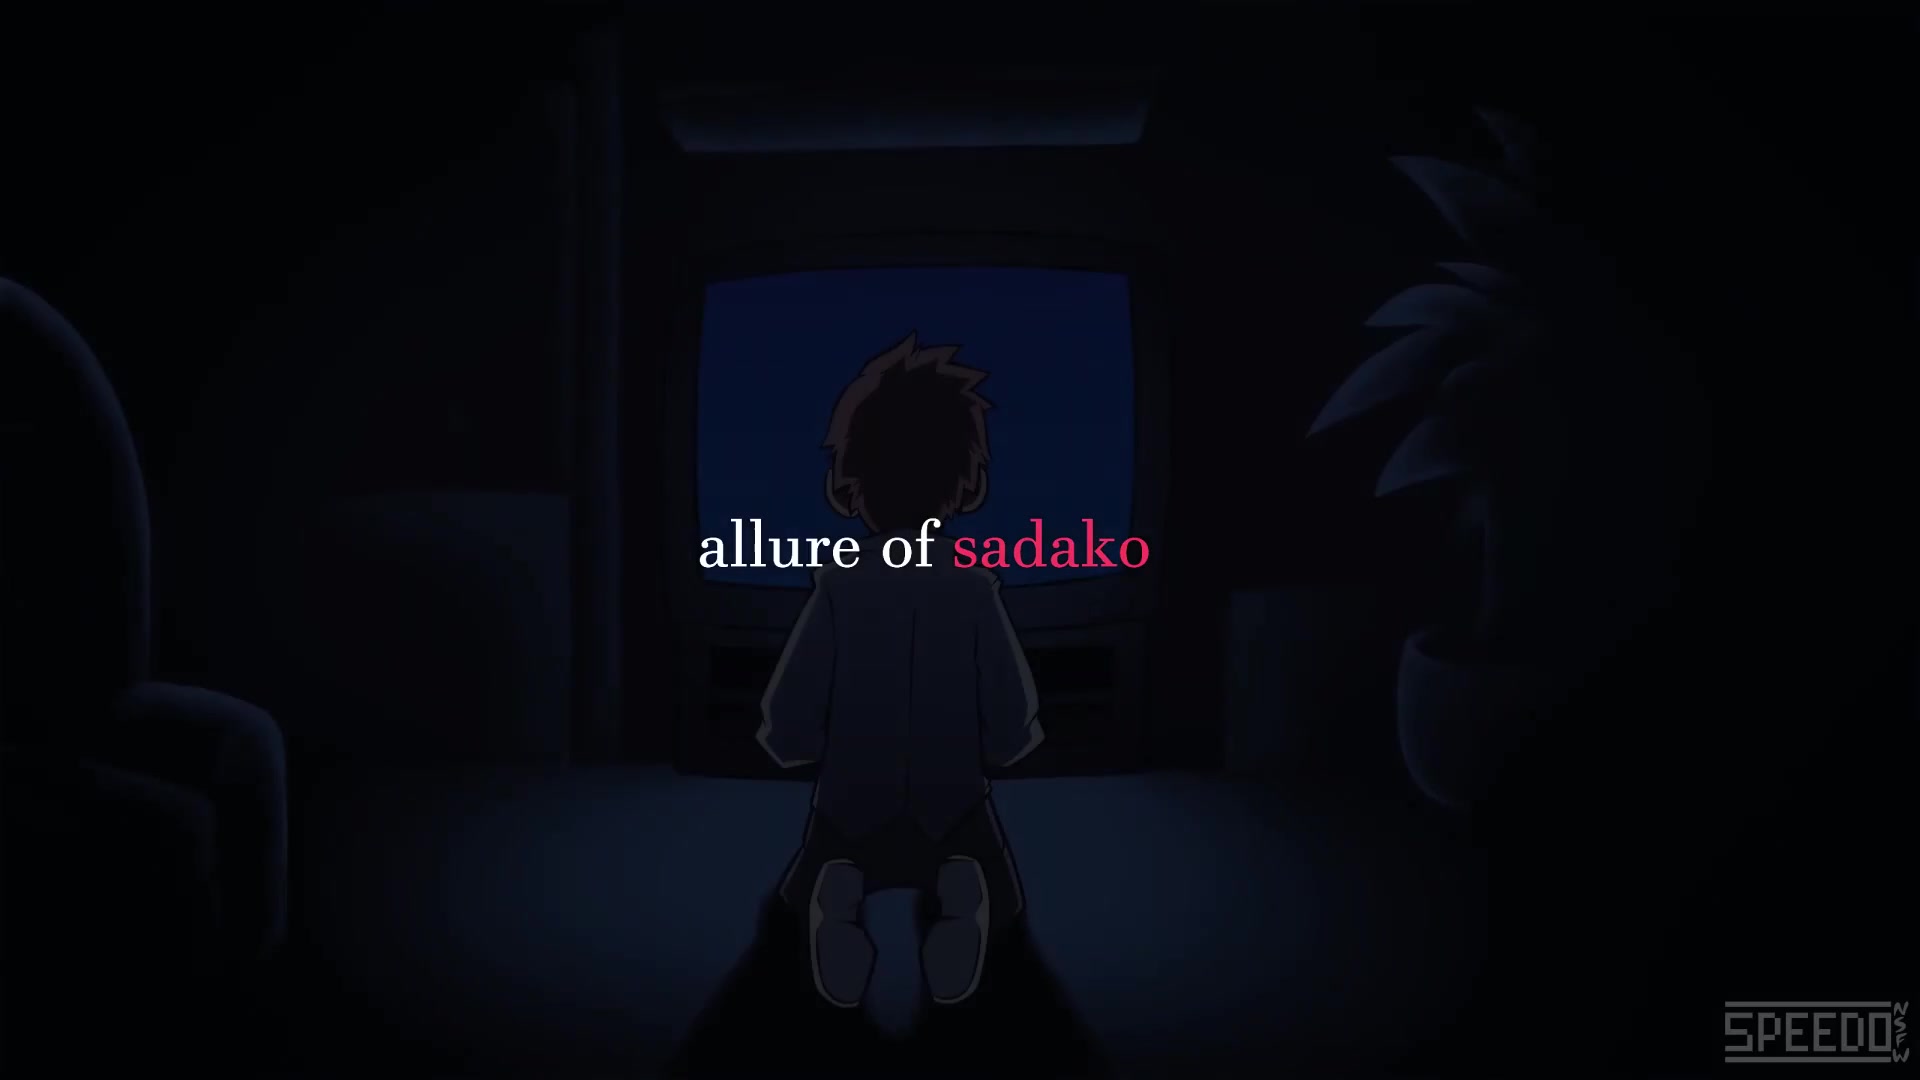 Allure of sadako